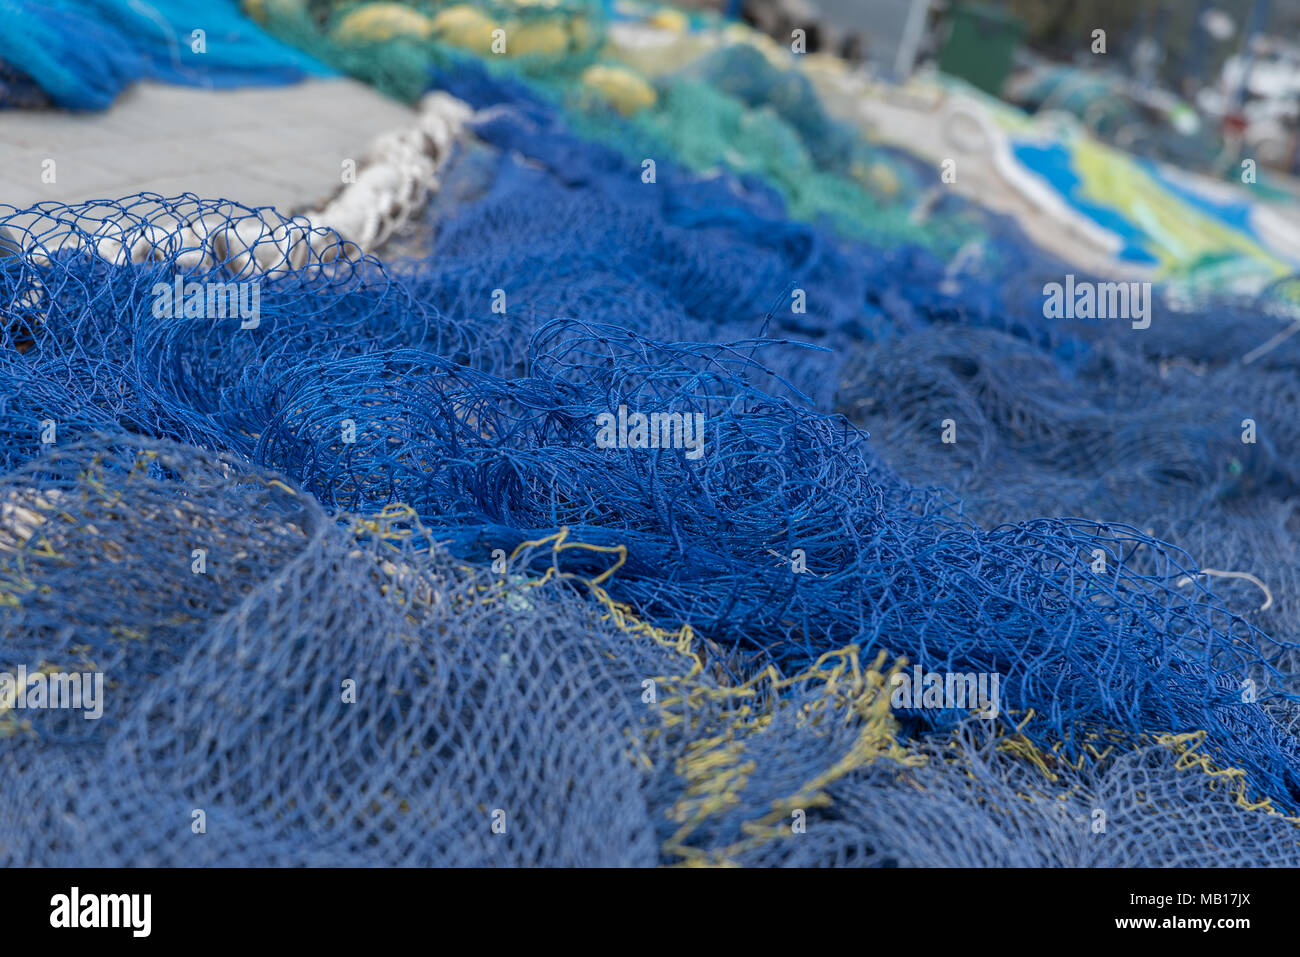 Detalle von Fischernetzen Foto de stock